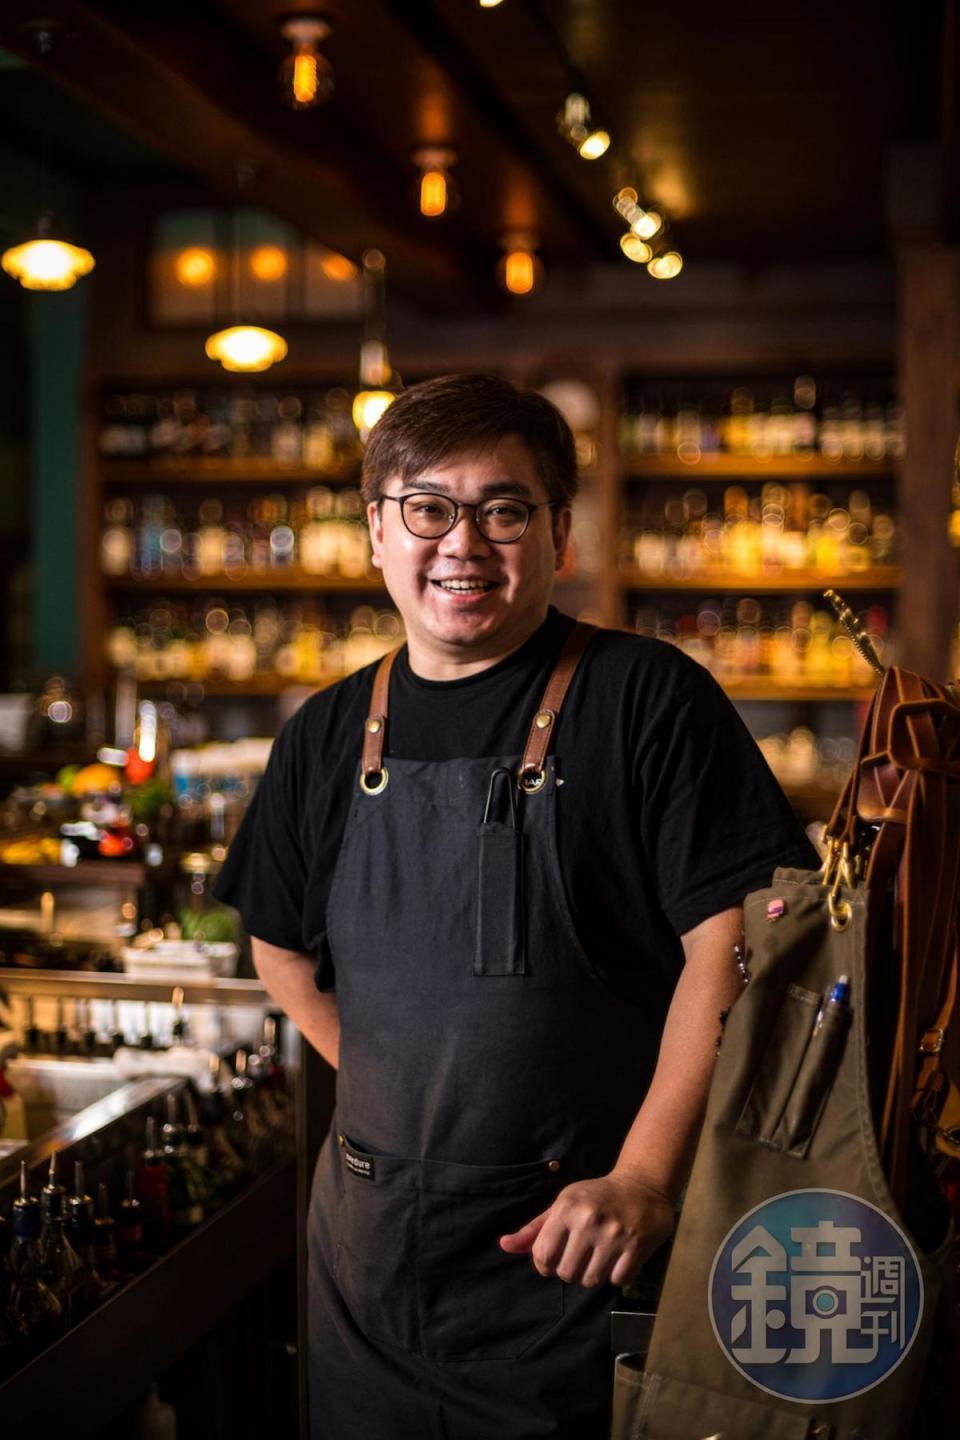 人稱「酒吧南霸天」的Bar Home負責人黃奕翔，率先帶起台南酒吧革新風潮。